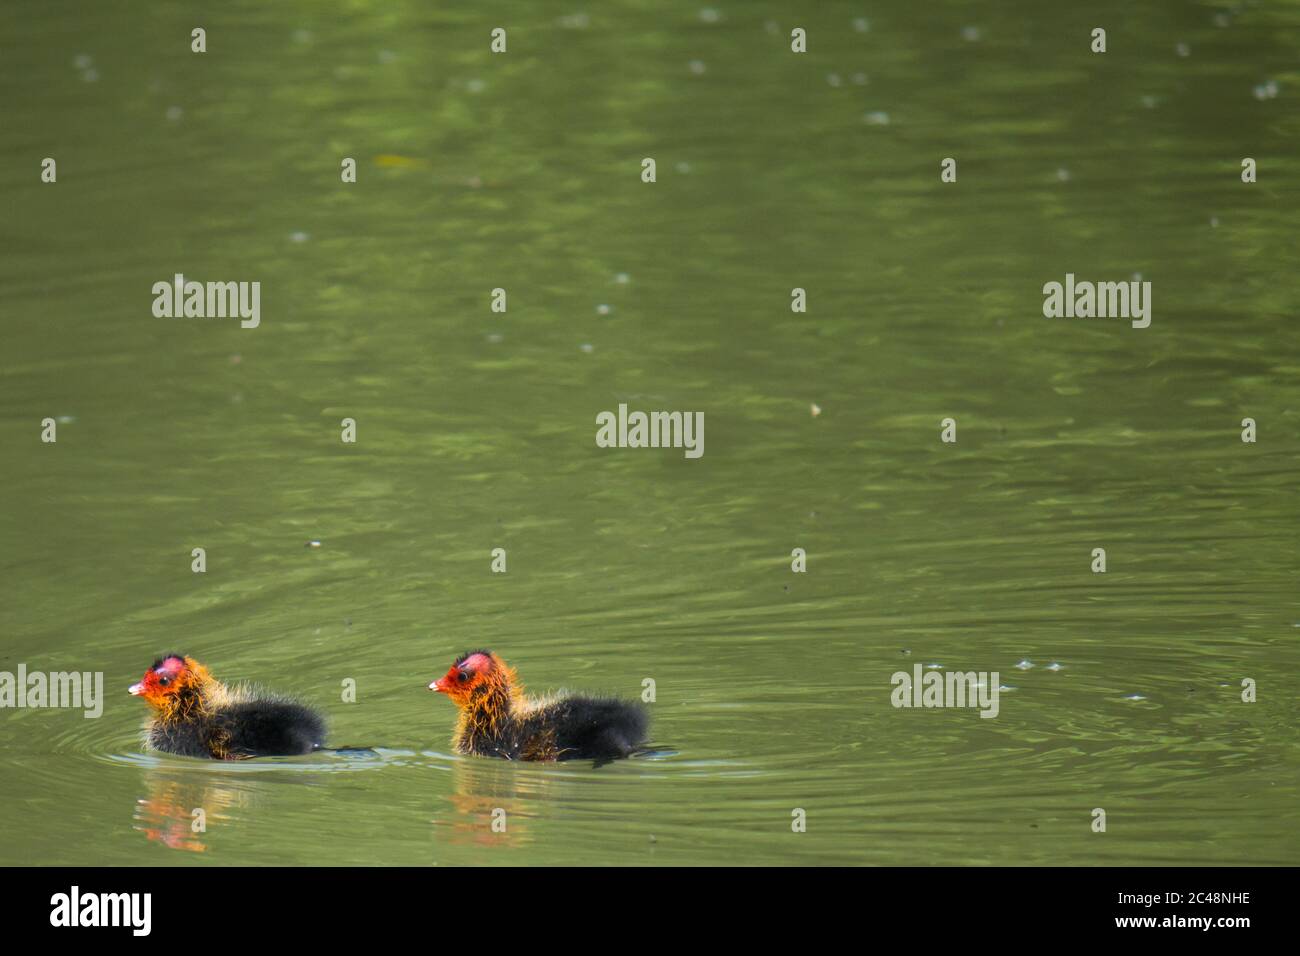 Deux poussins de cuisine commune (Fulica atra) nageant dans l'eau Banque D'Images